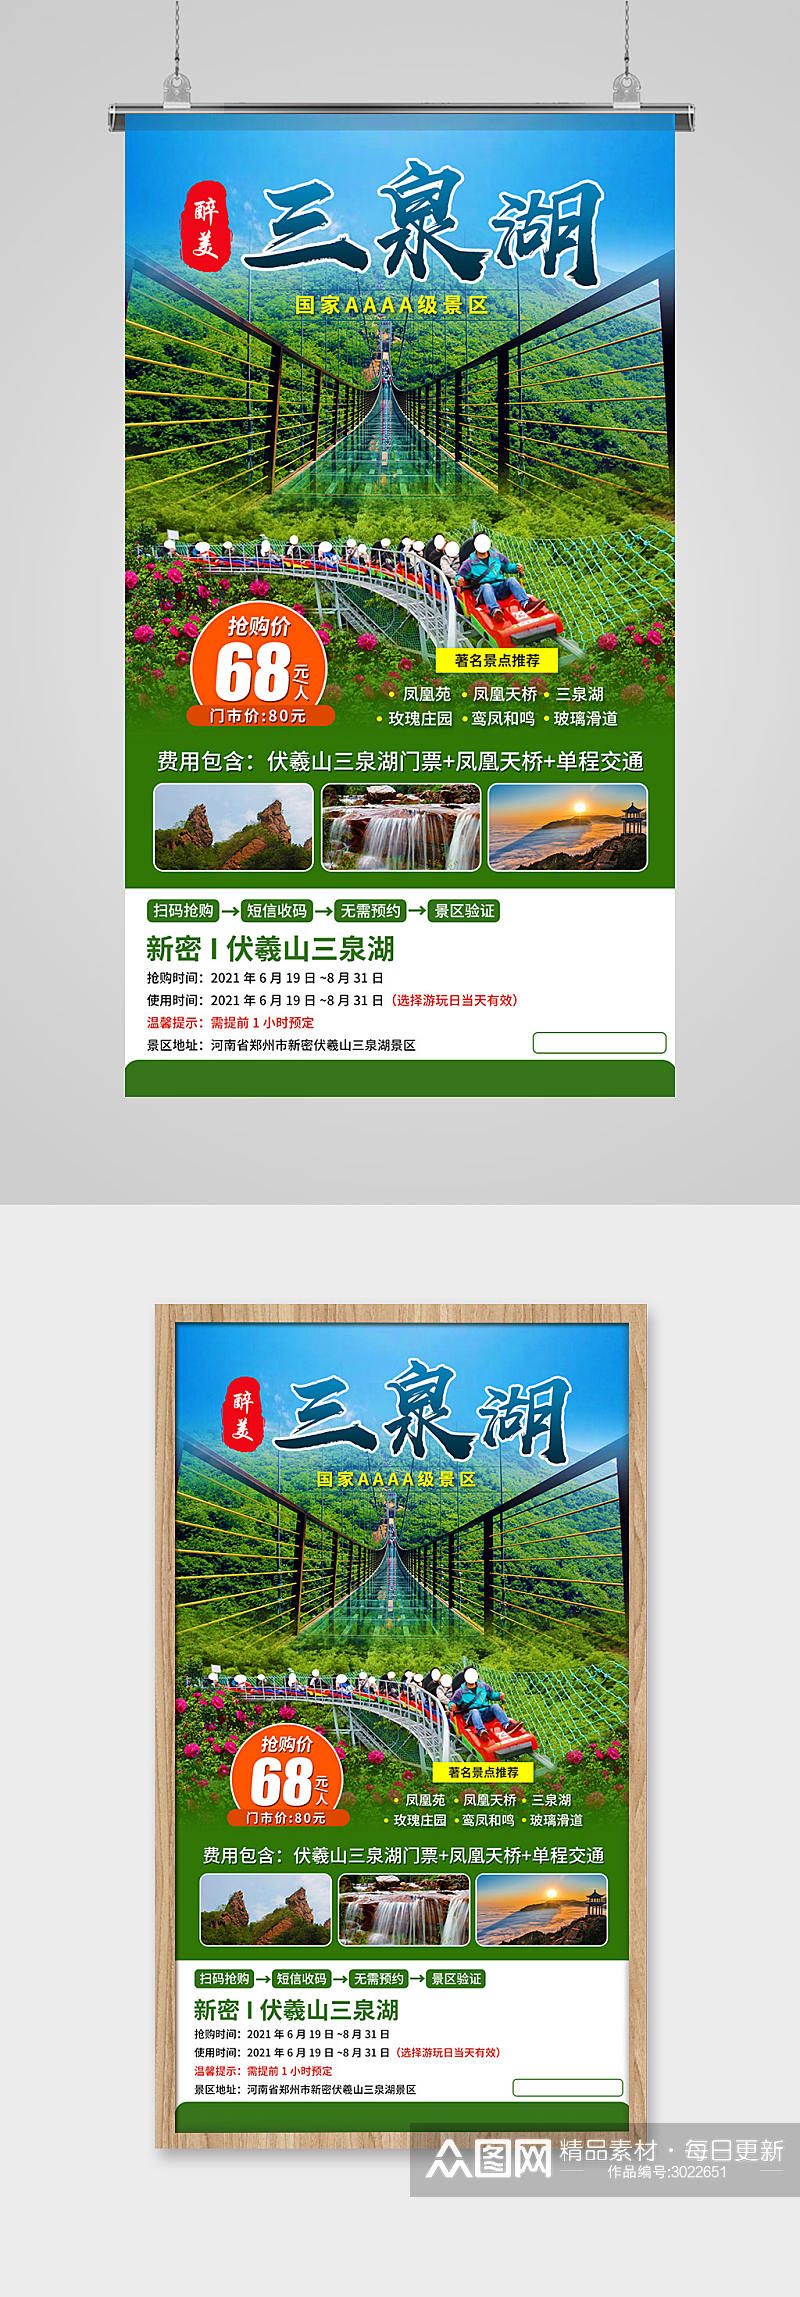 伏羲山旅游宣传海报素材